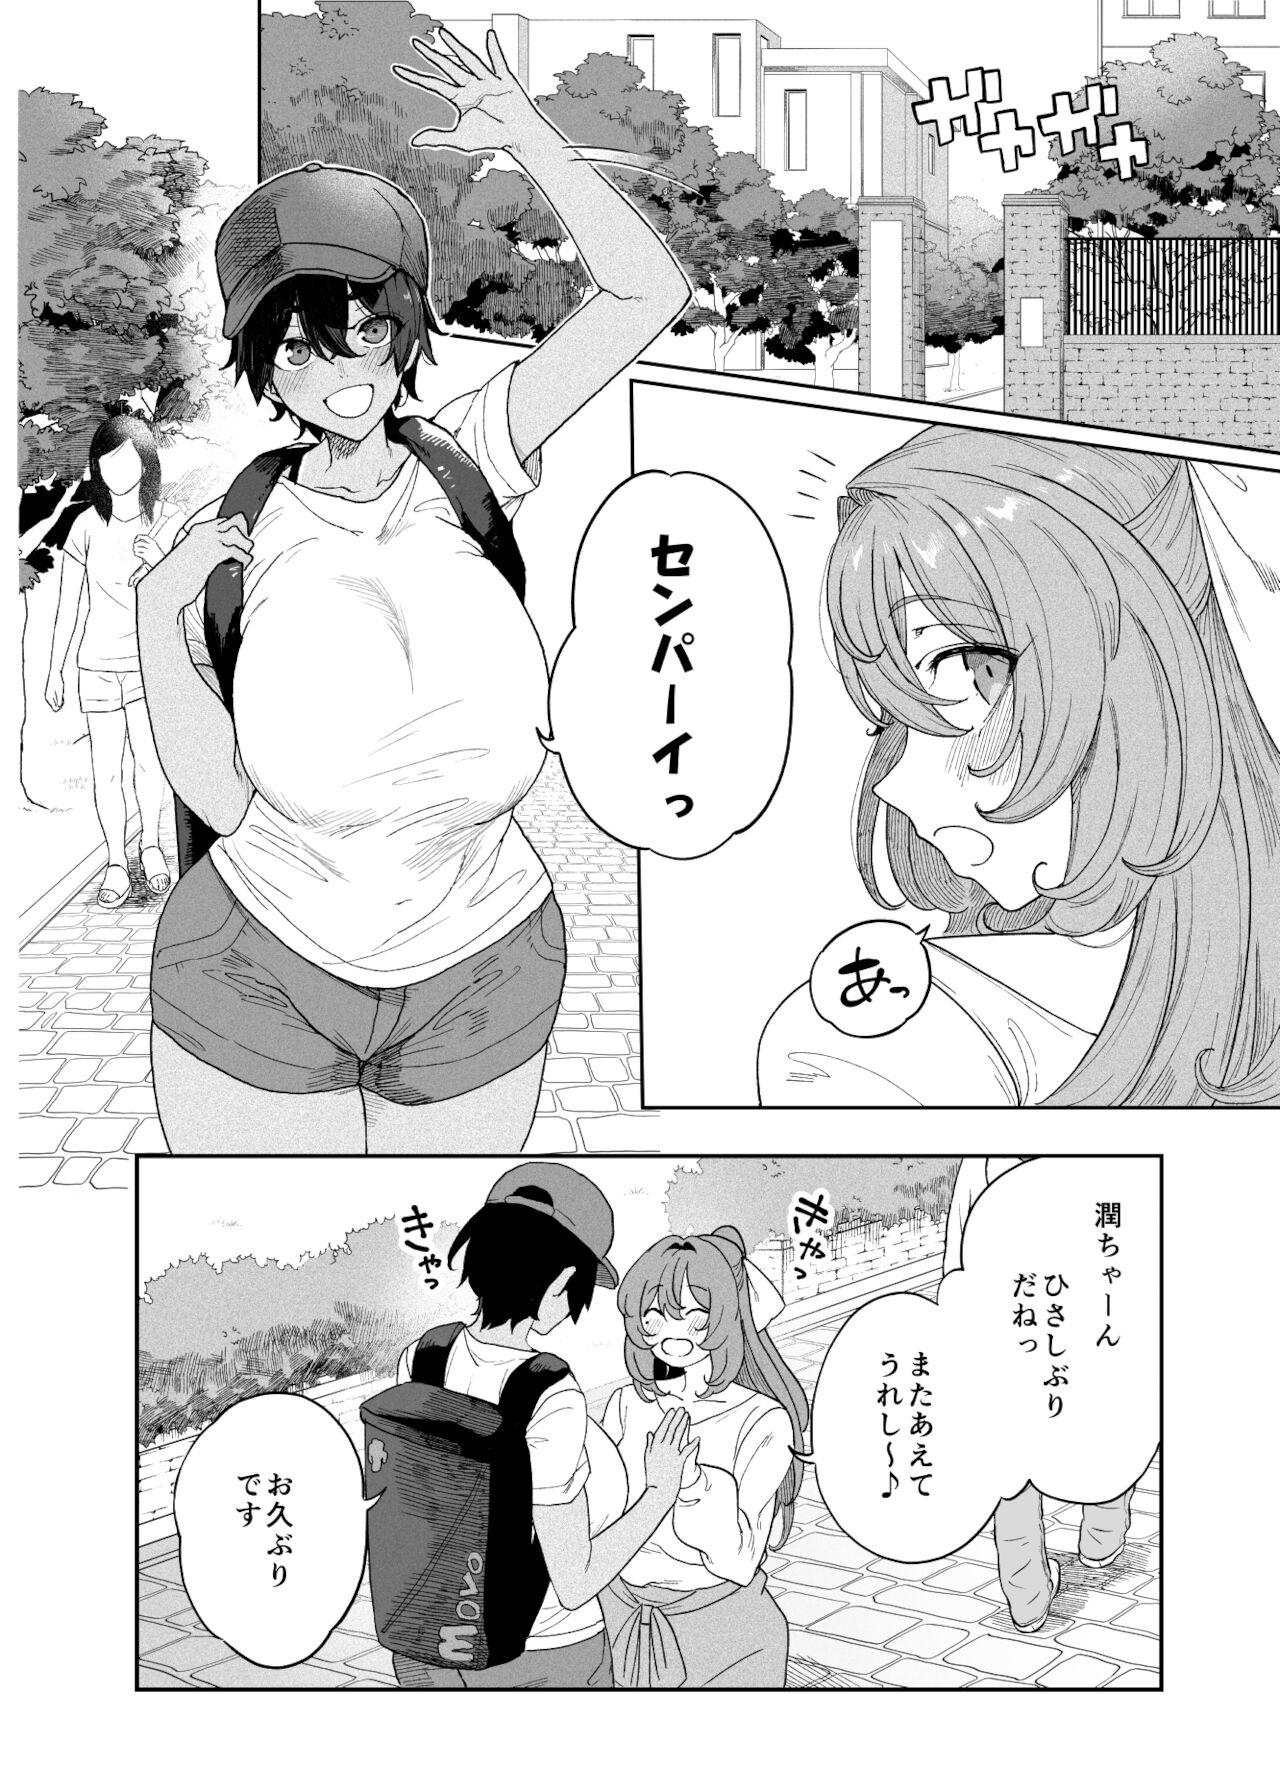 TenniCir Manga Zenpen + Chuuhen + Owari 1